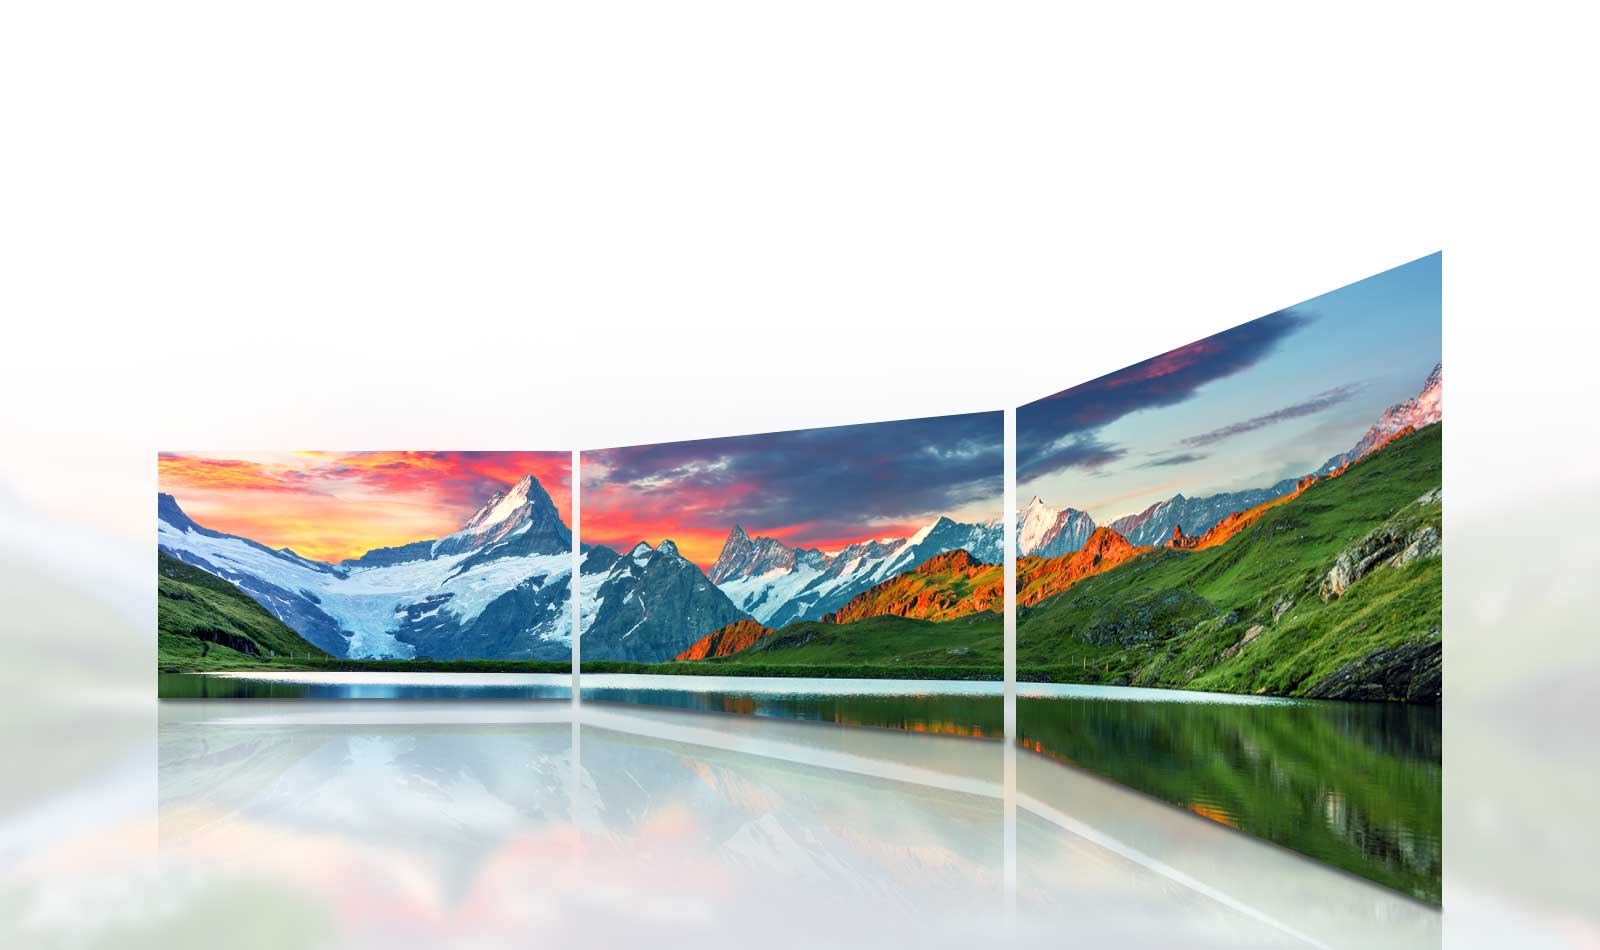 HD LED-телевизор LG обеспечивает качественное изображение при широких углах обзора